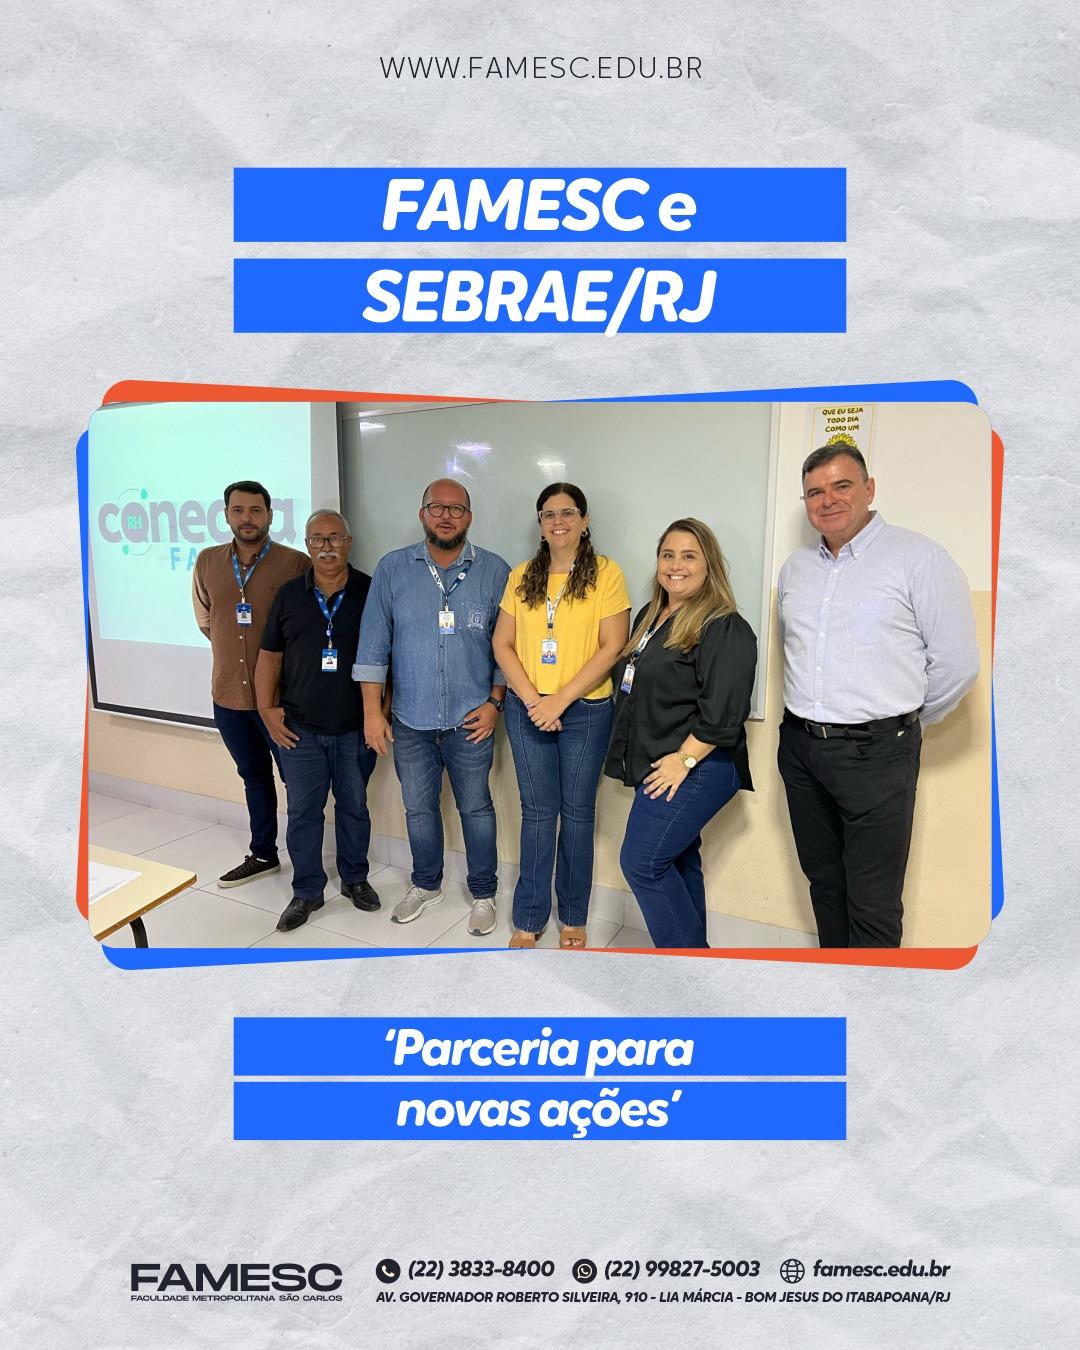 FAMESC e SEBRAE/RJ reafirmam parceria com novas ações 